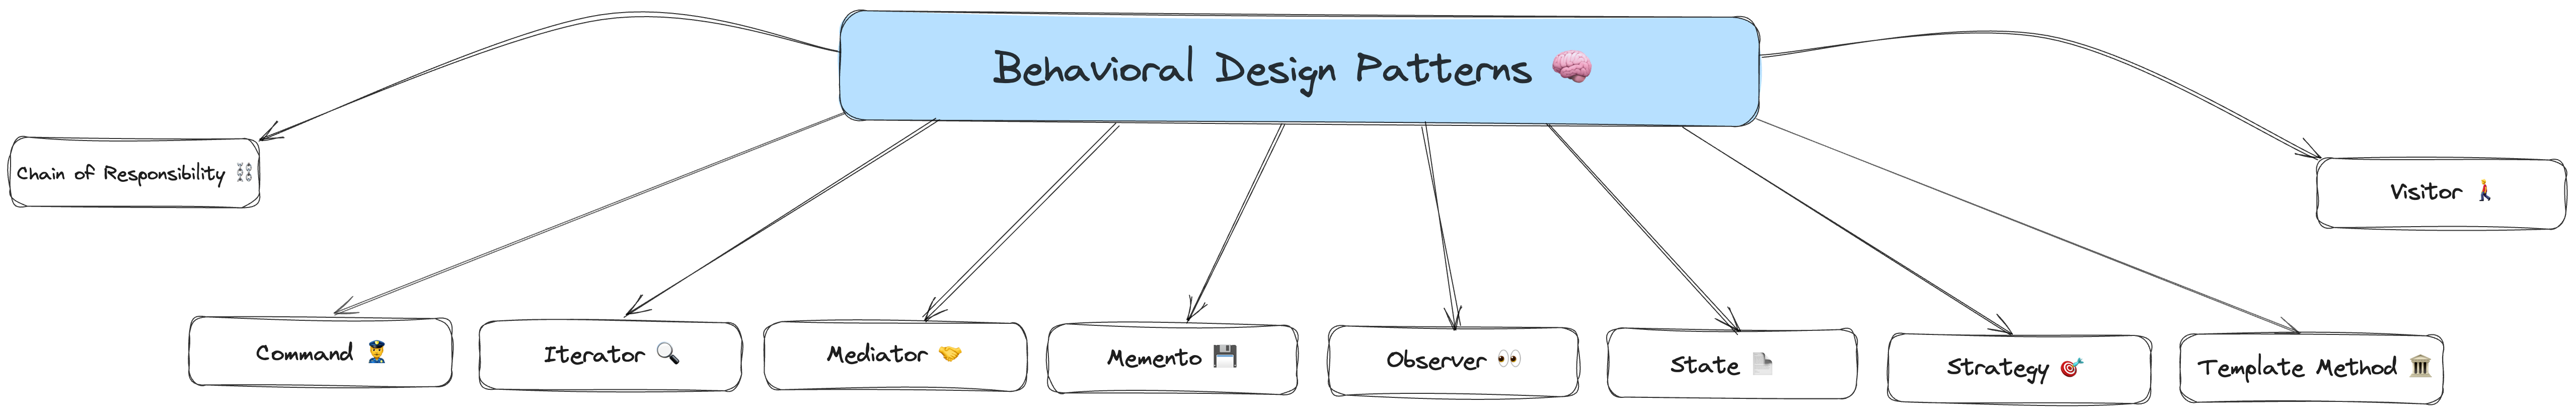 behavioral-design-patterns.png